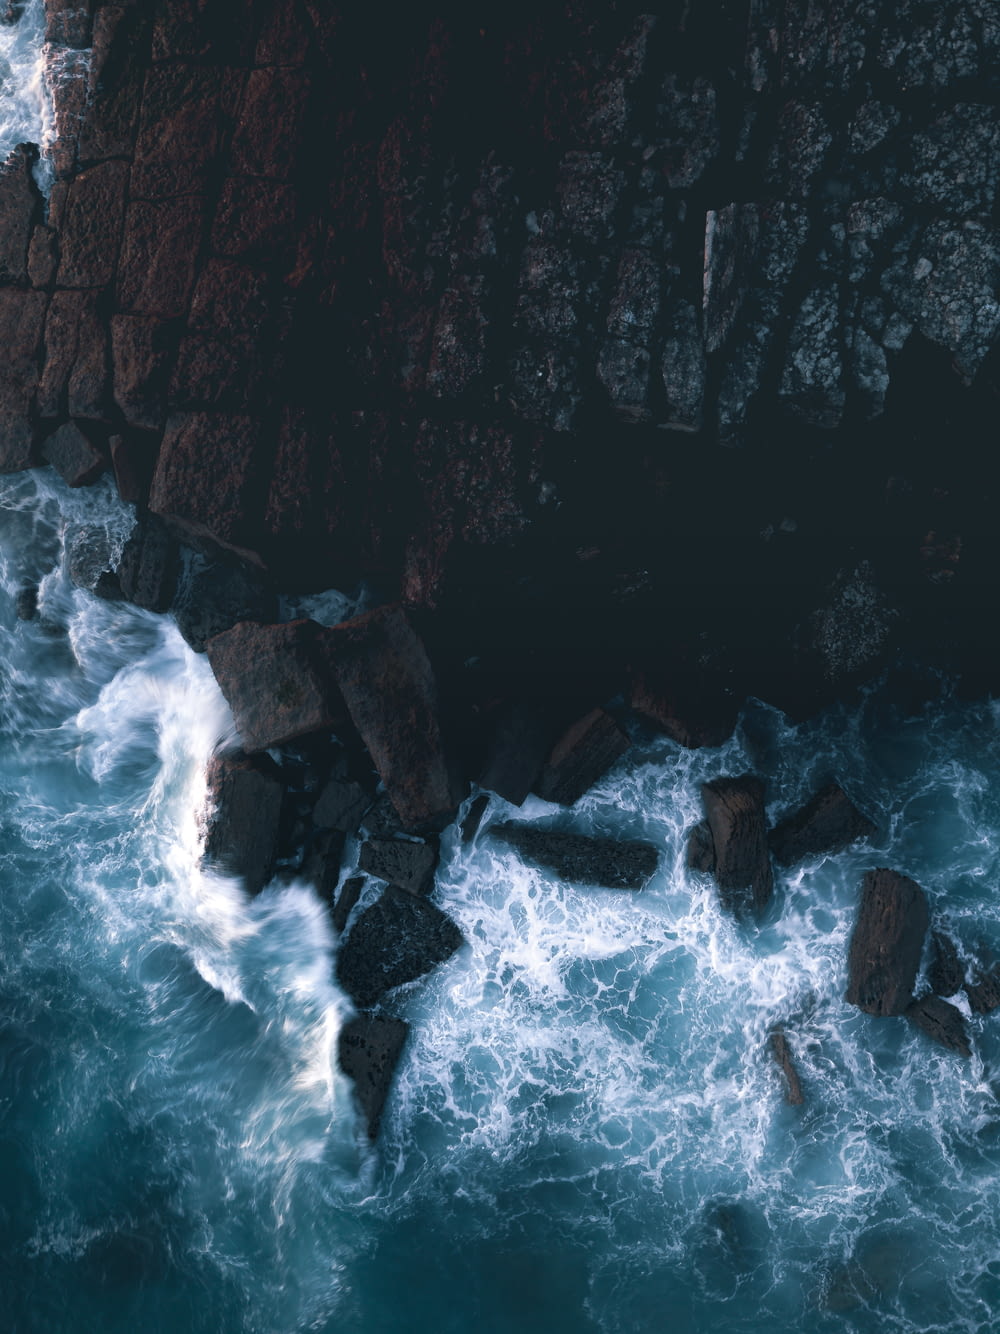 water waves hitting rocks during daytime